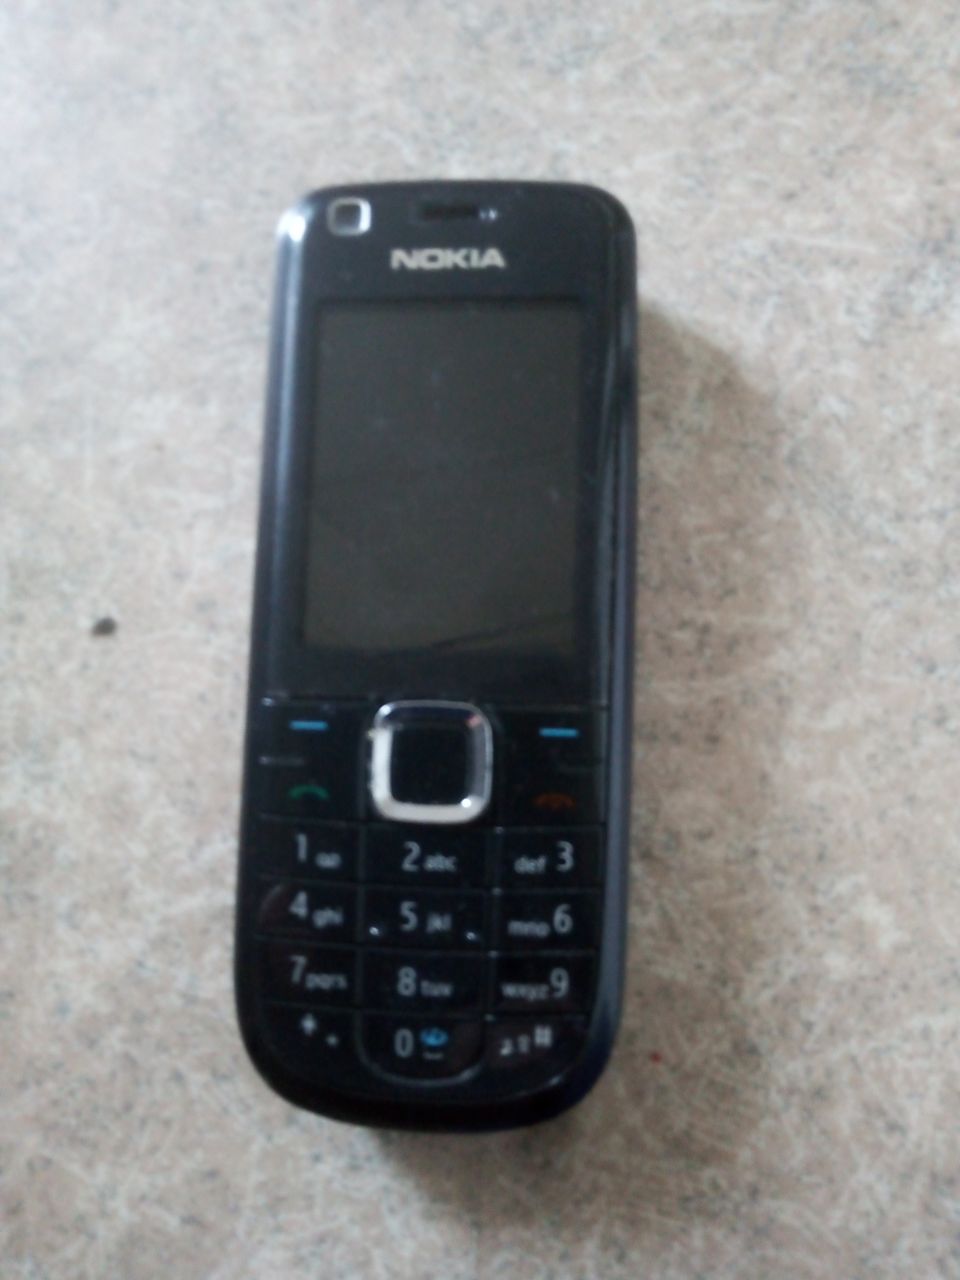 Nokia kapulapuhelin